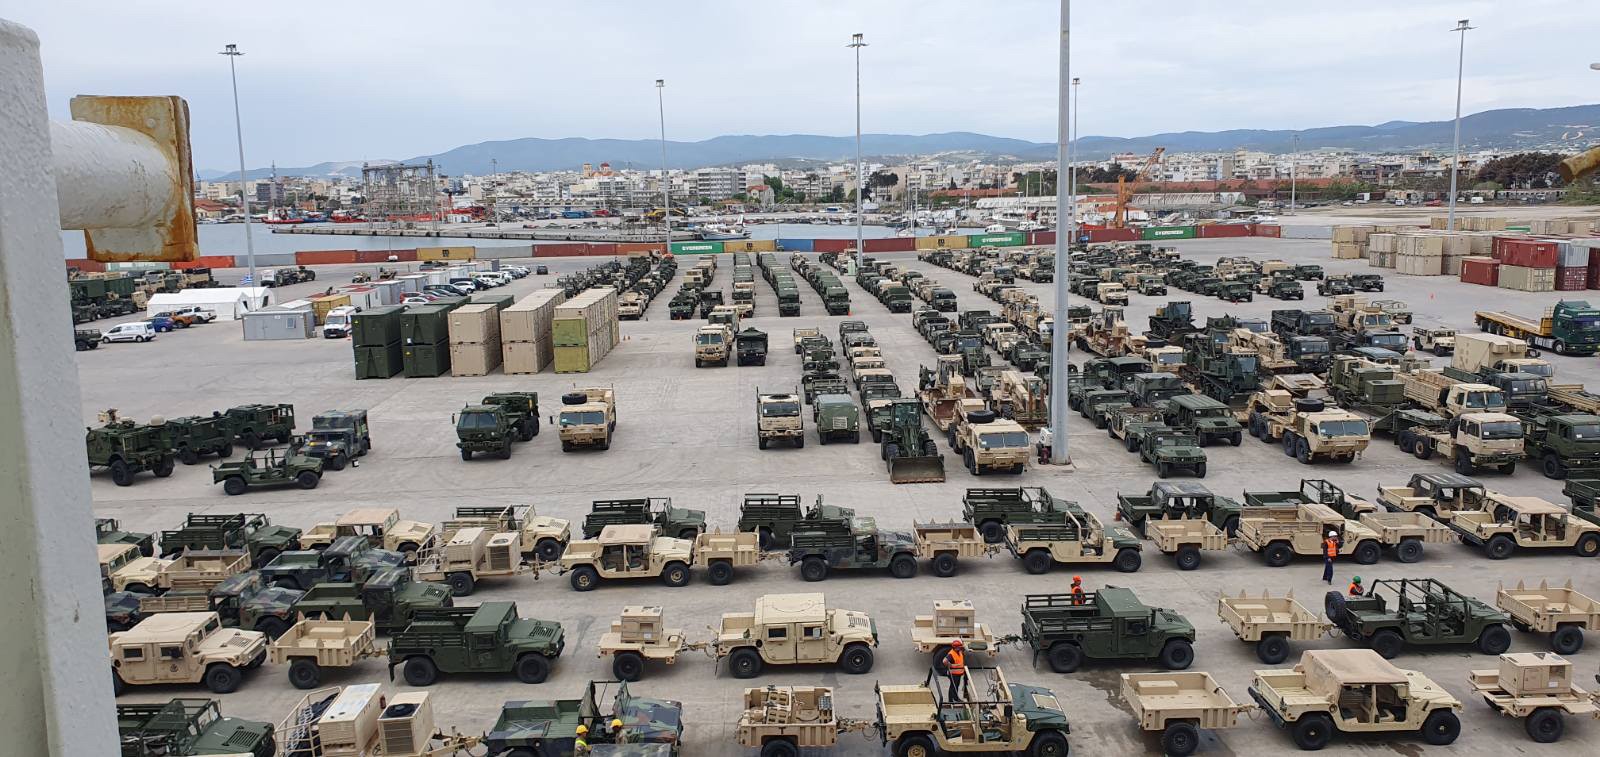 Ολοκληρώθηκε στο λιμάνι της Αλεξανδρούπολης μεγάλη επιχείρηση φόρτωσης 1400 τεμαχίων στρατιωτικού εξοπλισμού